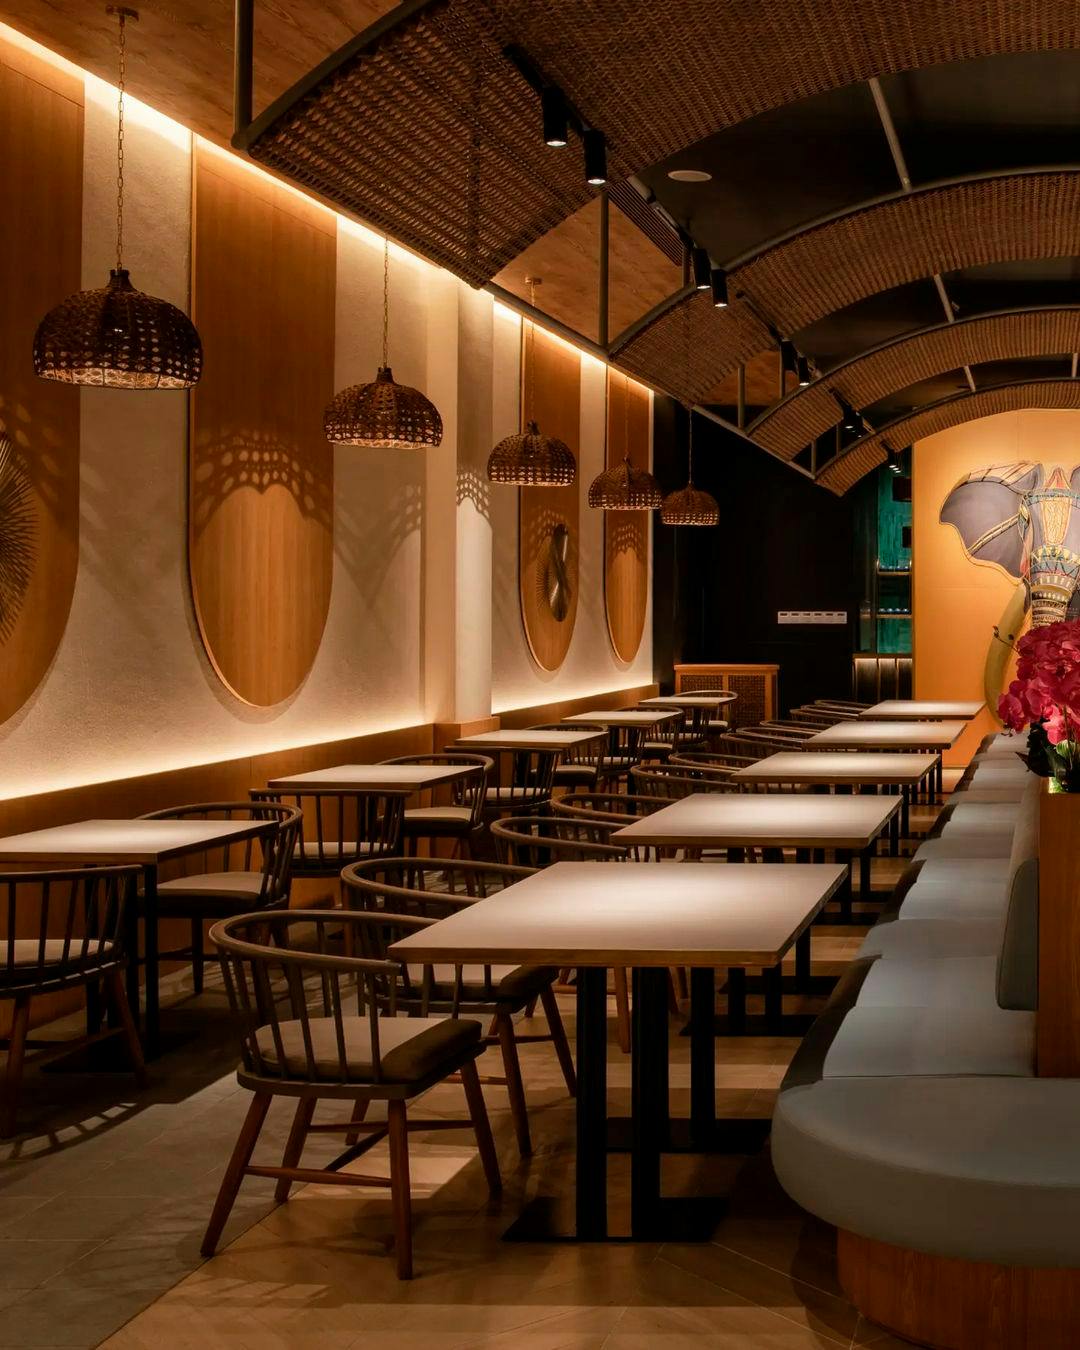 Imagen número 85 de Este reconocido restaurante parisino, con piedra de Cosentino en mesas, barras, paredes y mesas, es una lección de decoración moderna y elegante